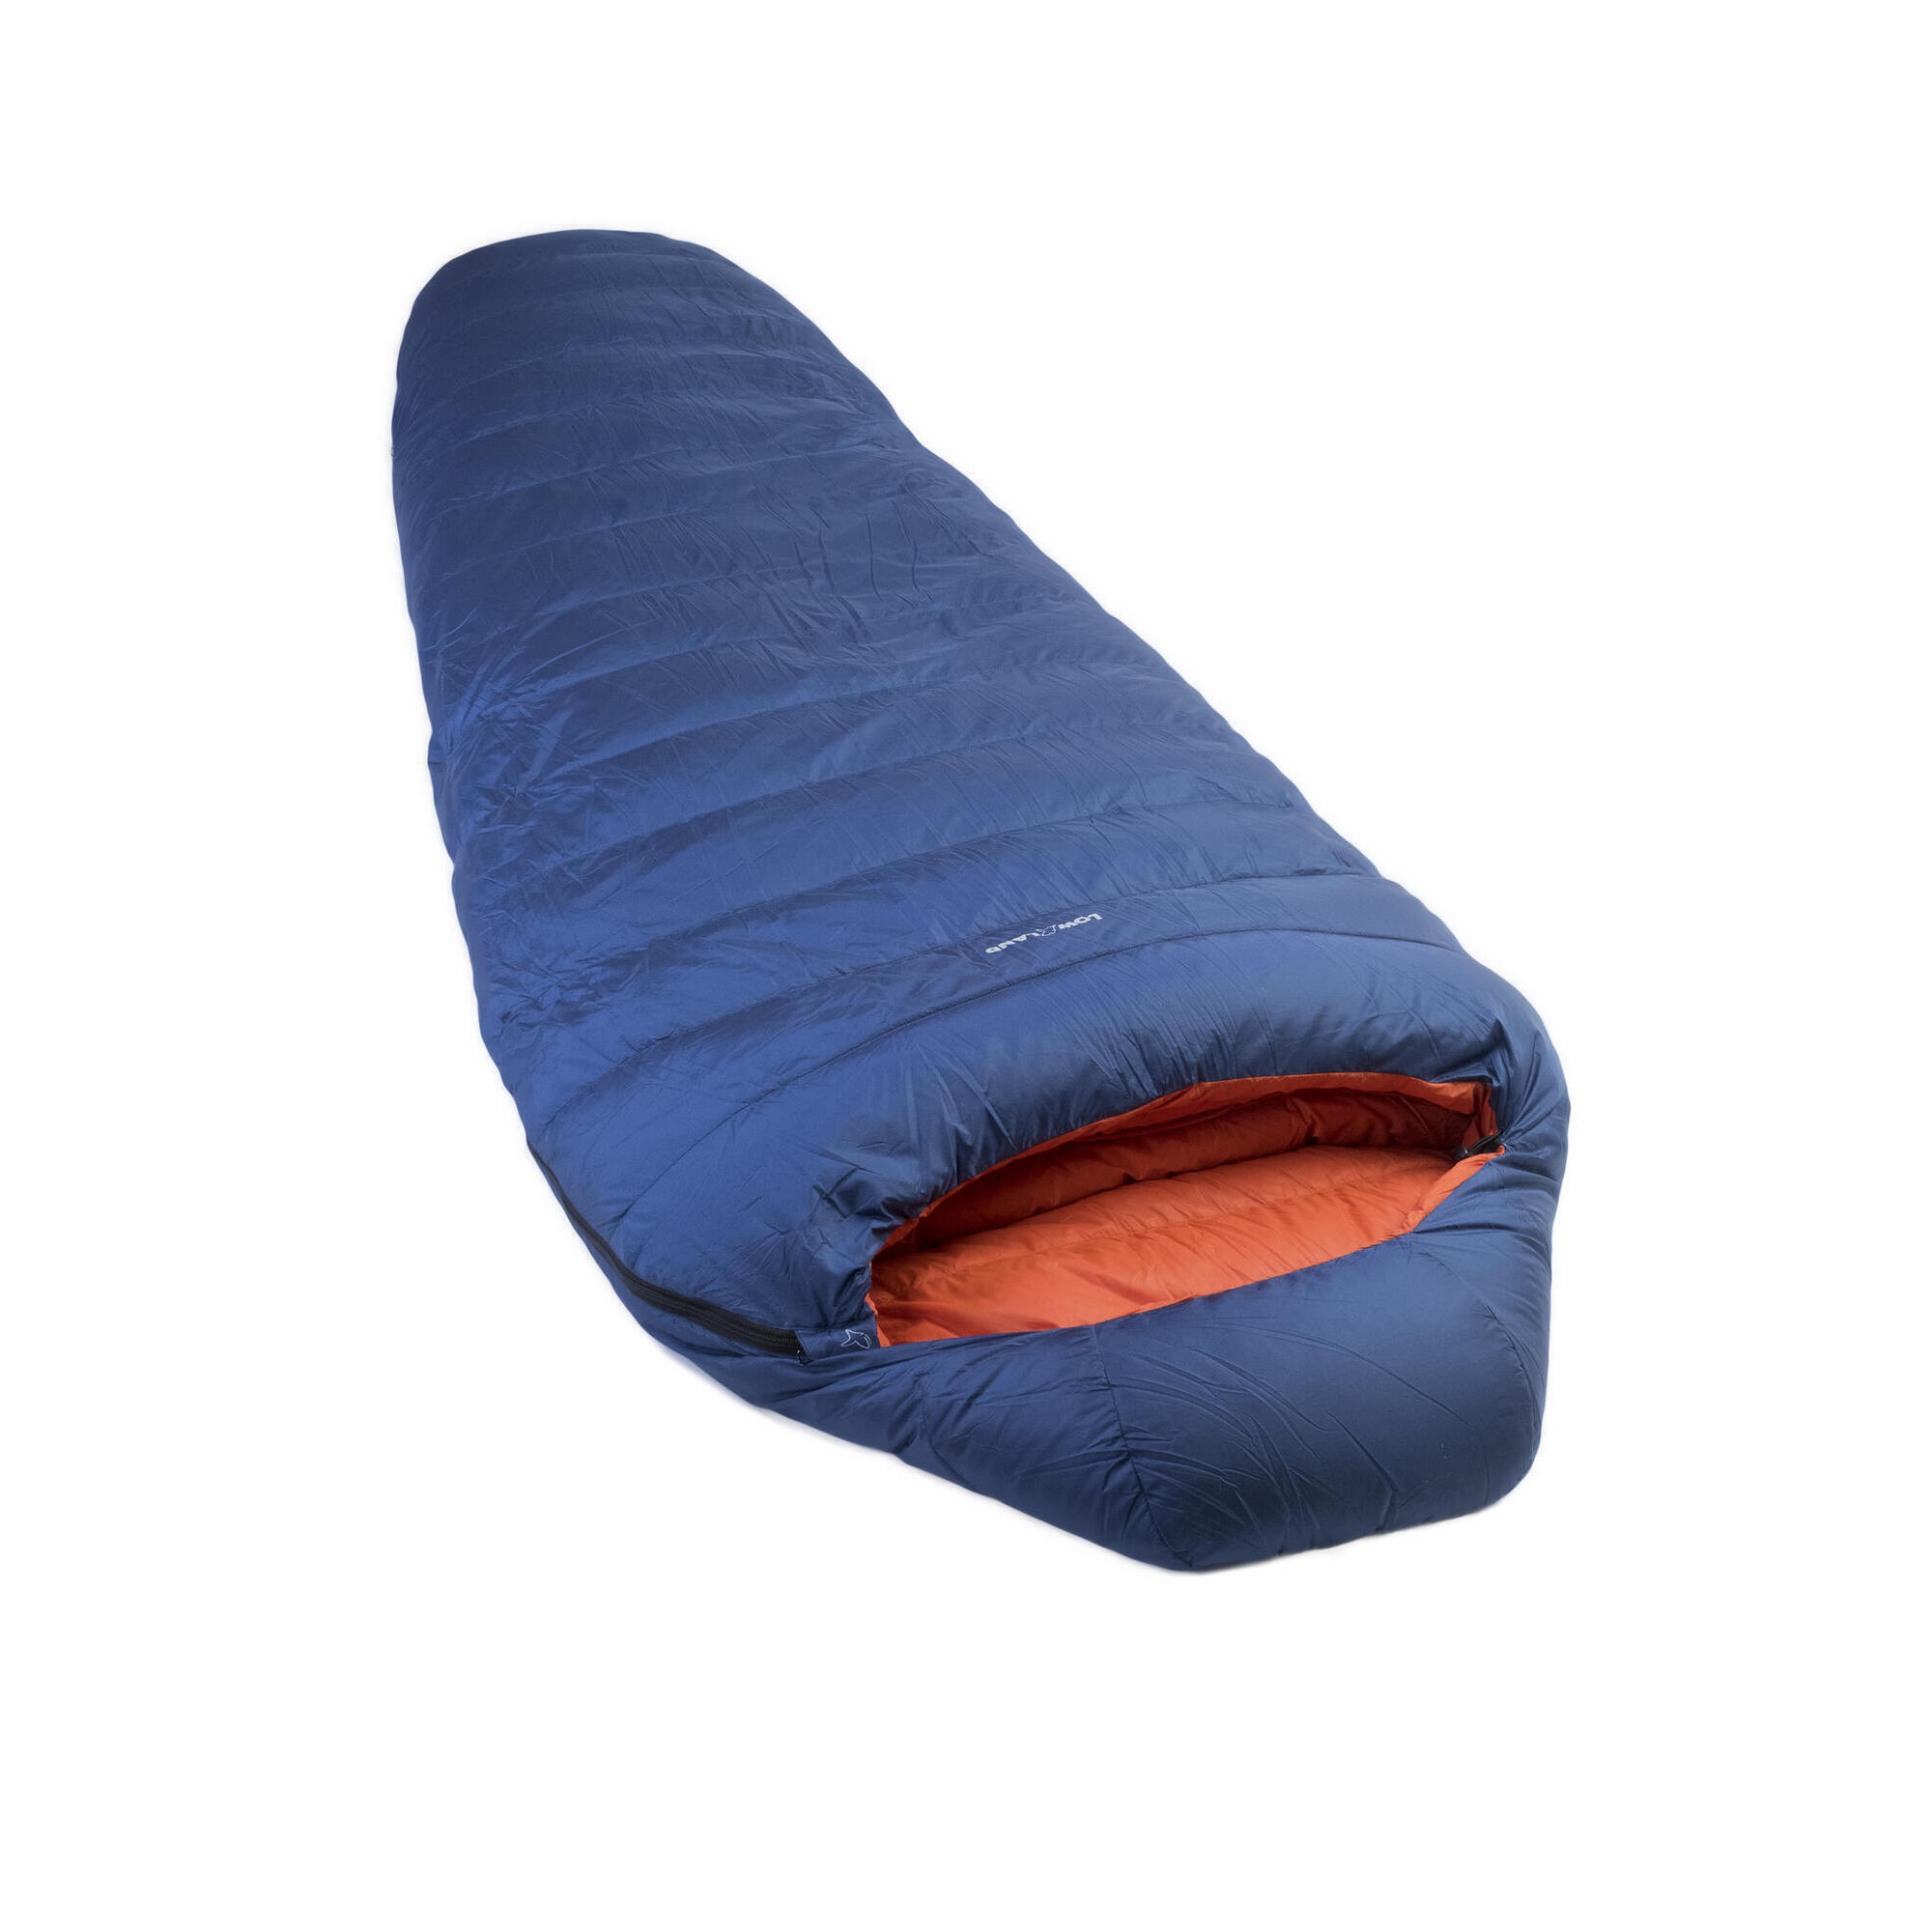 Мешок Kibo - 5 пуховый спальный нейлоновый 225x80 см, сине - оранжевый